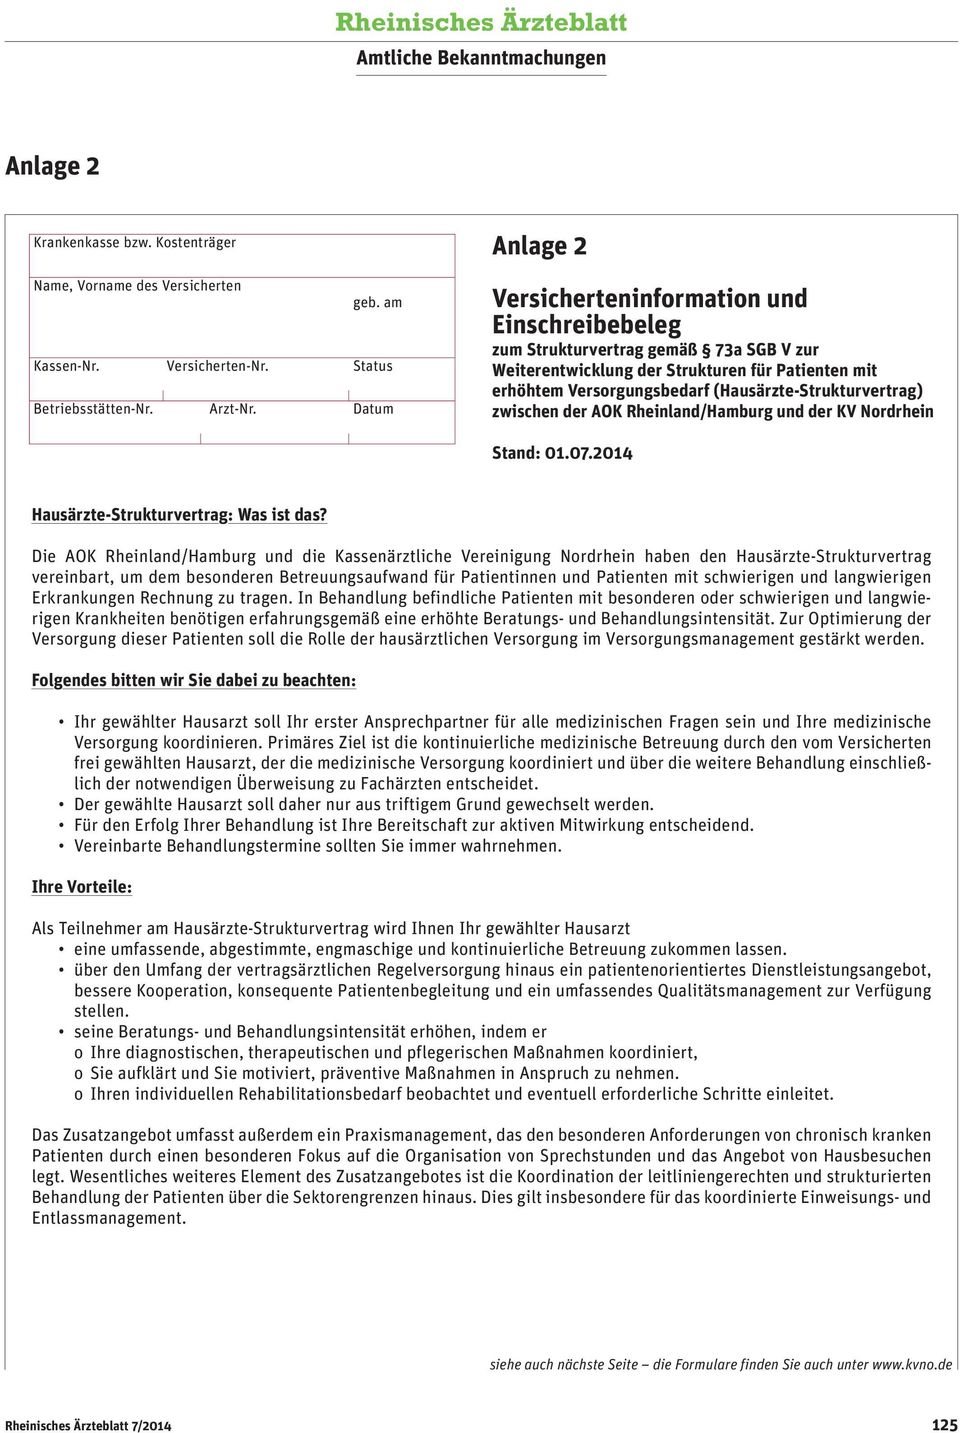 (Hausärzte-Strukturvertrag) zwischen der AOK Rheinland/Hamburg und der KV Nordrhein Stand: 0.07.04 Hausärzte-Strukturvertrag: Was ist das?